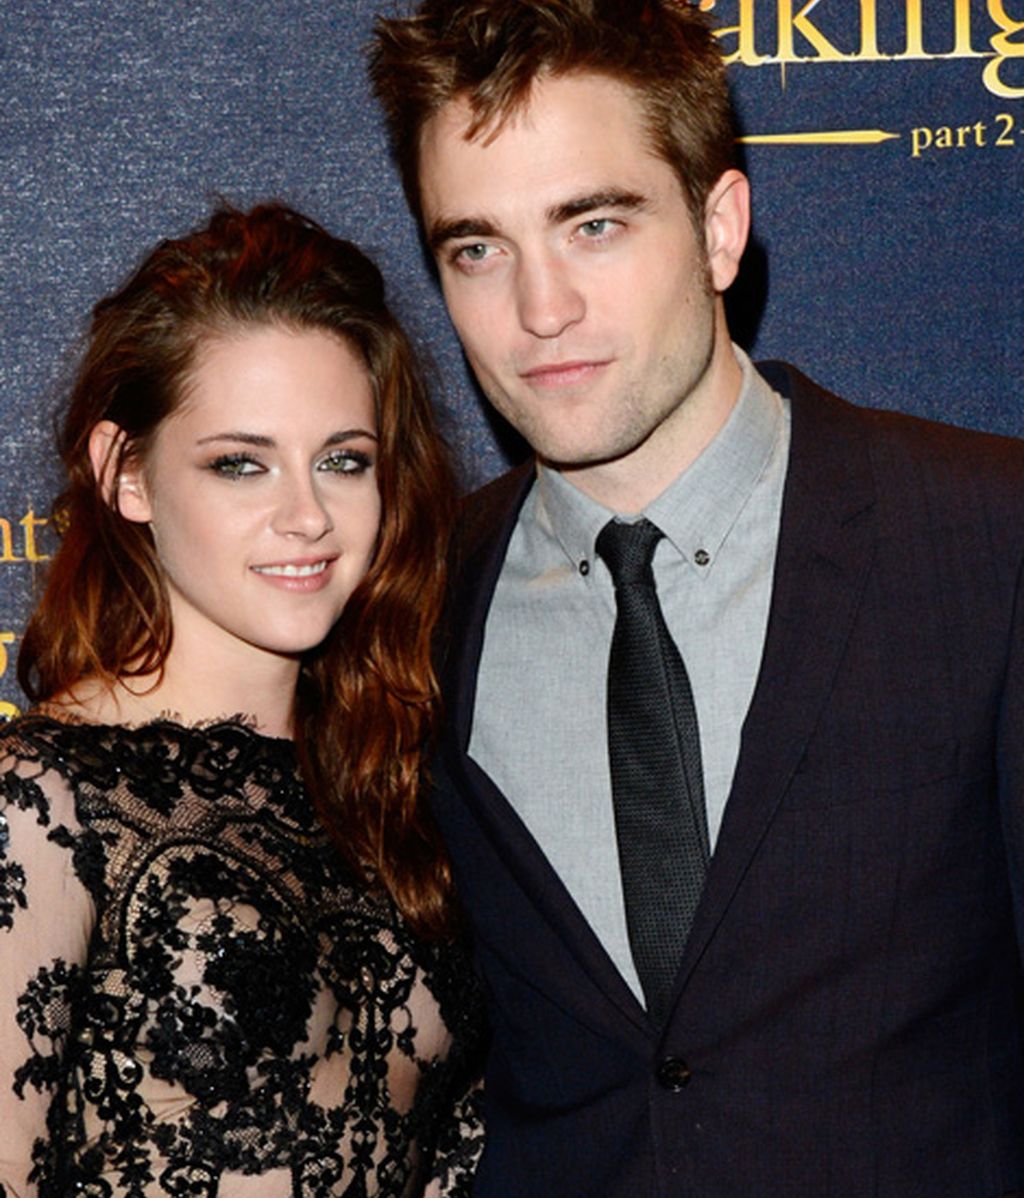 ¿Fue la relación de Kristen Stewart y Robert Pattinson una farsa?